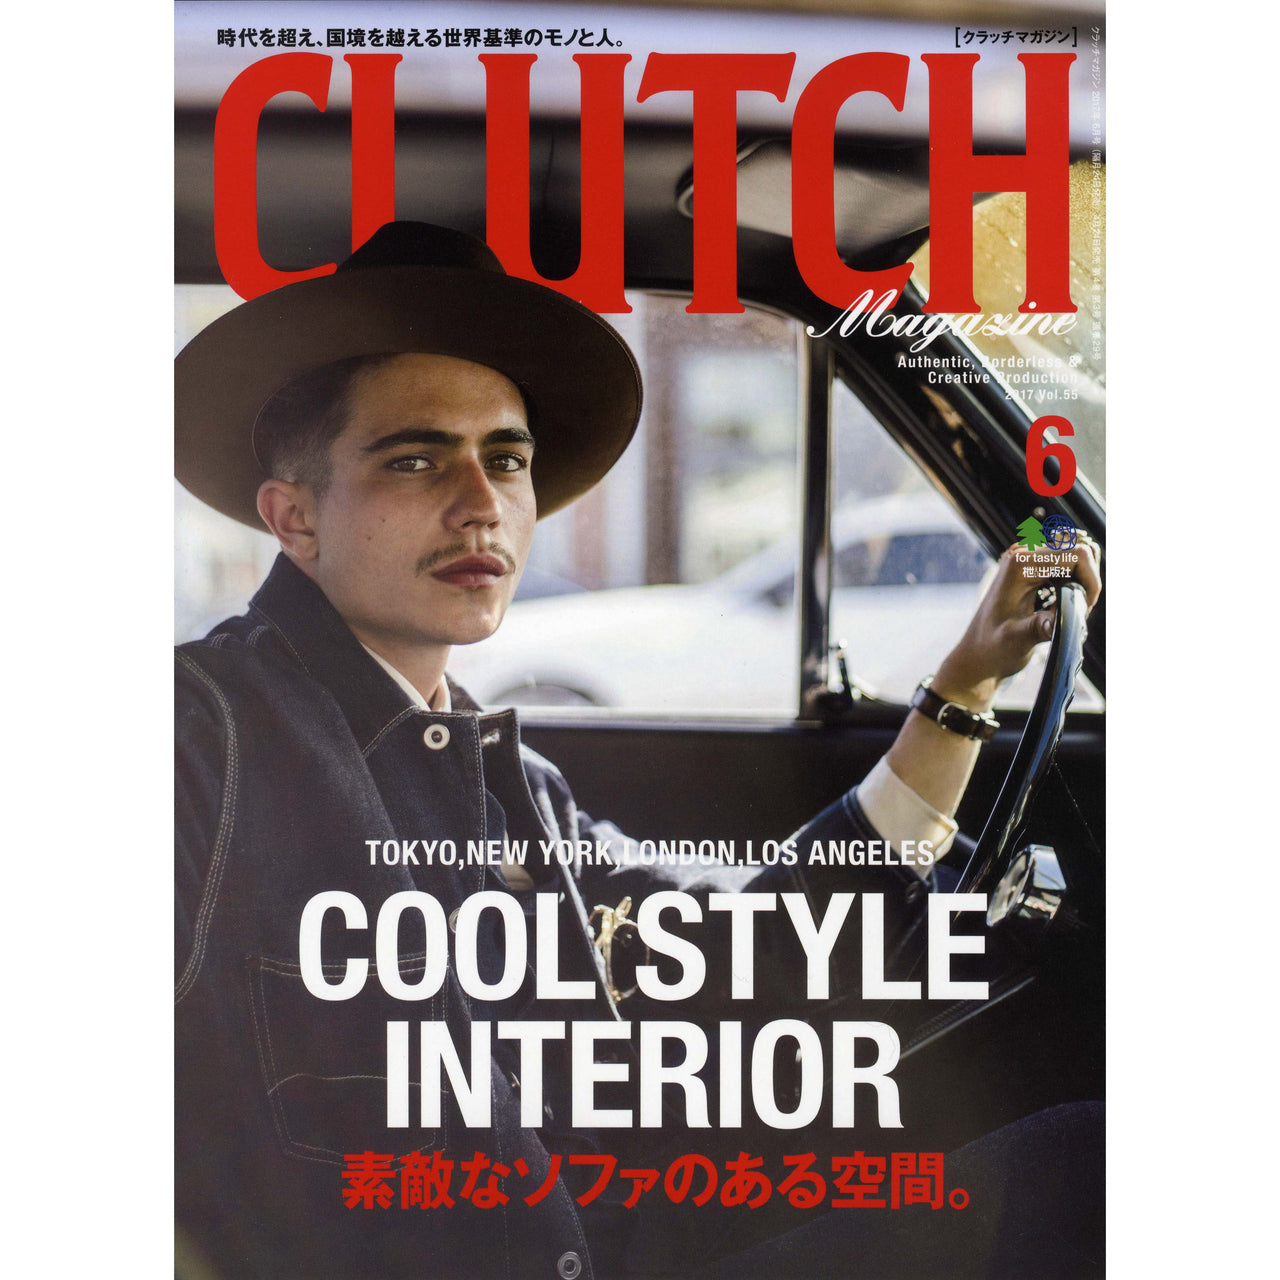 Clutch Magazine Vol.55-Clutch Cafe